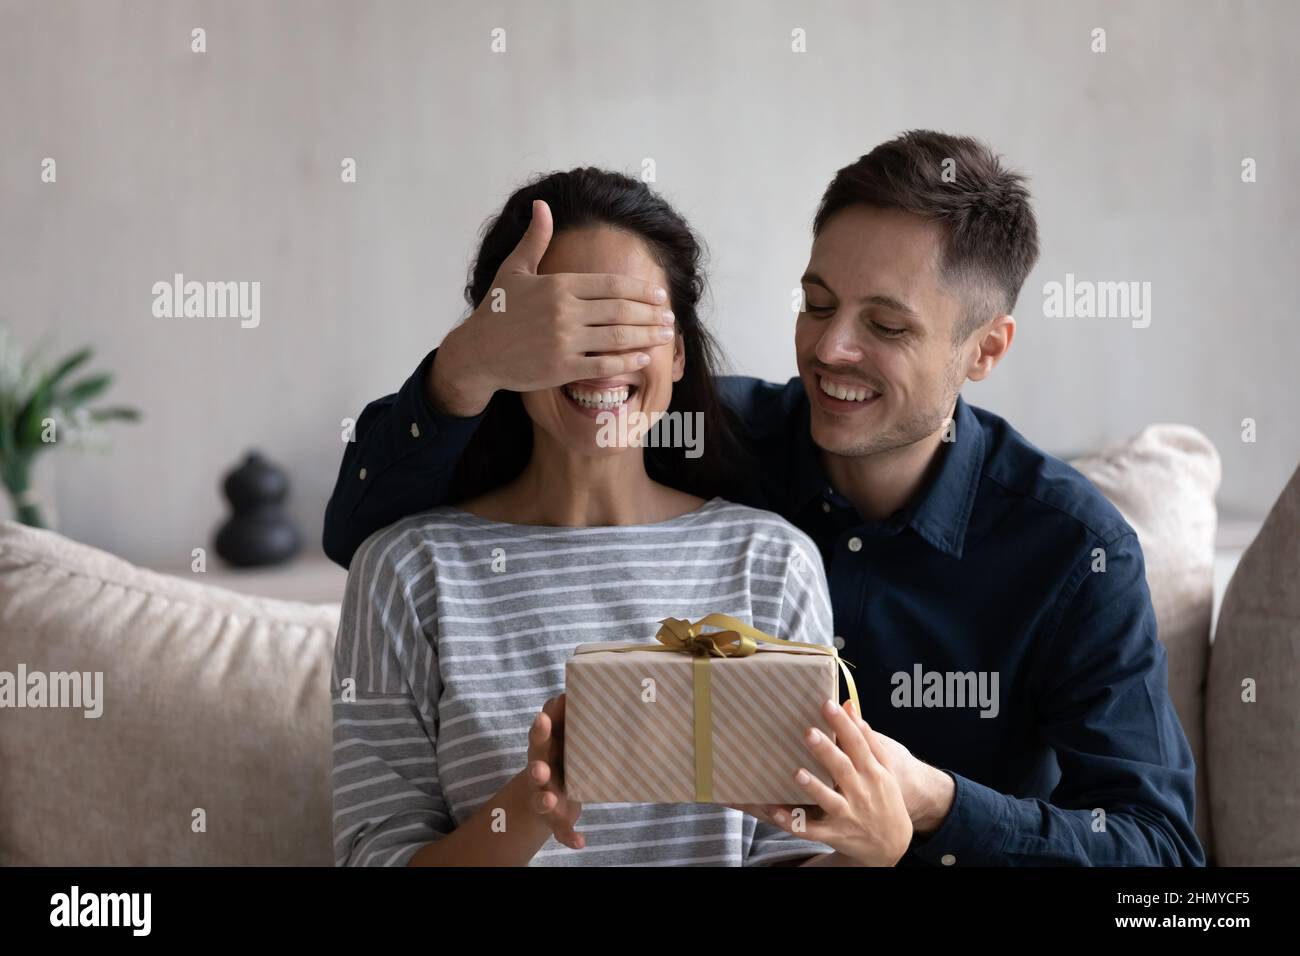 Glücklicher Ehemann, der der aufgeregten Frau ein Überraschungsgeschenk gab Stockfoto